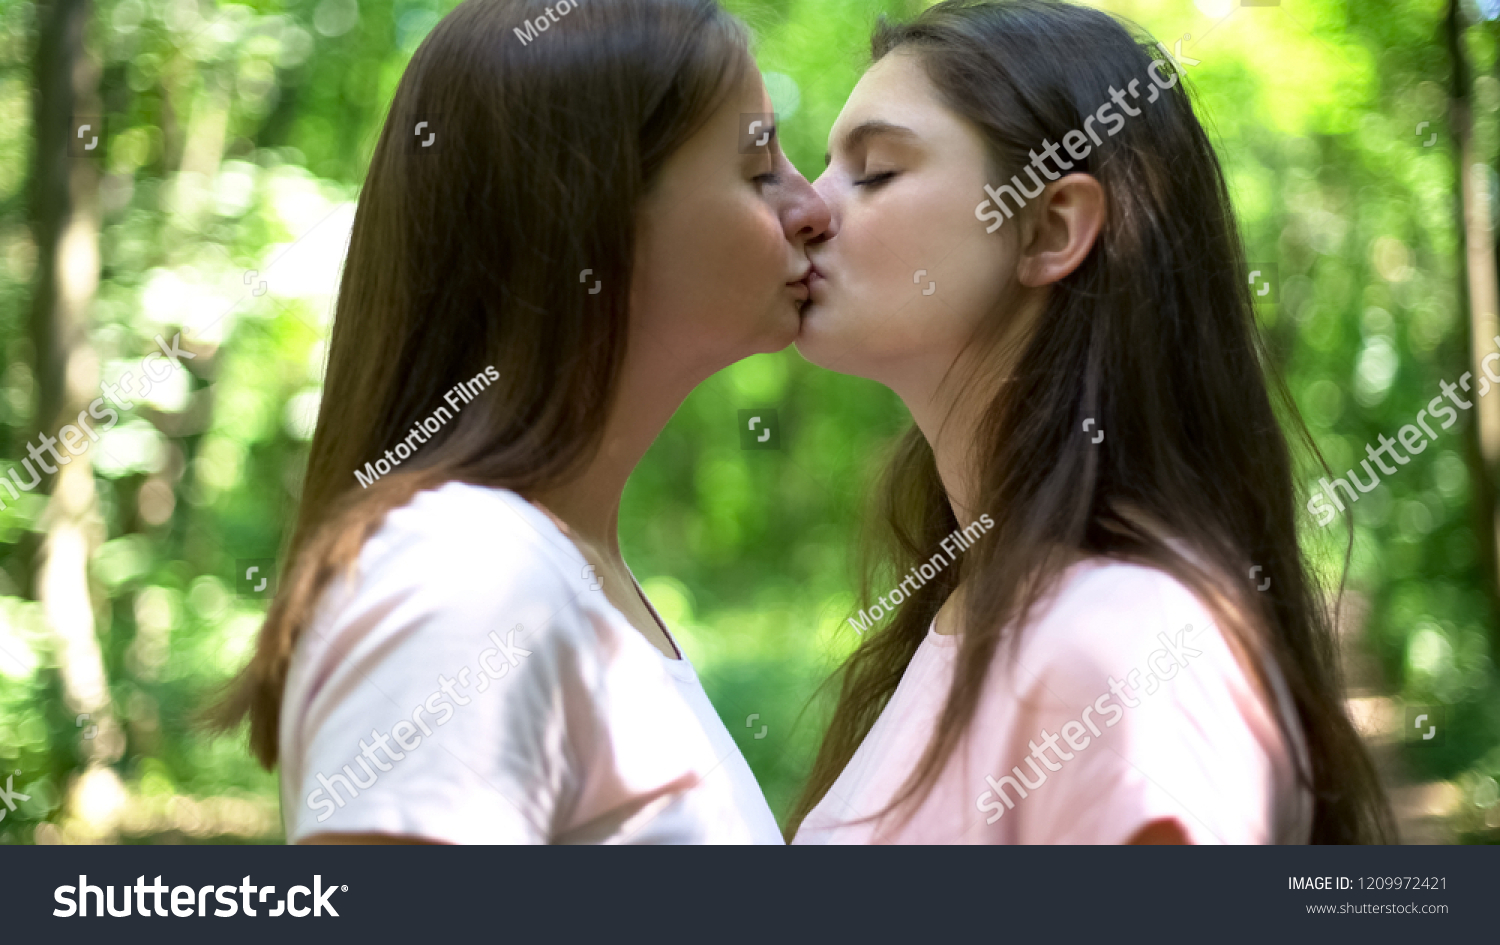 bilog castro recommends lesbians kissing images pic